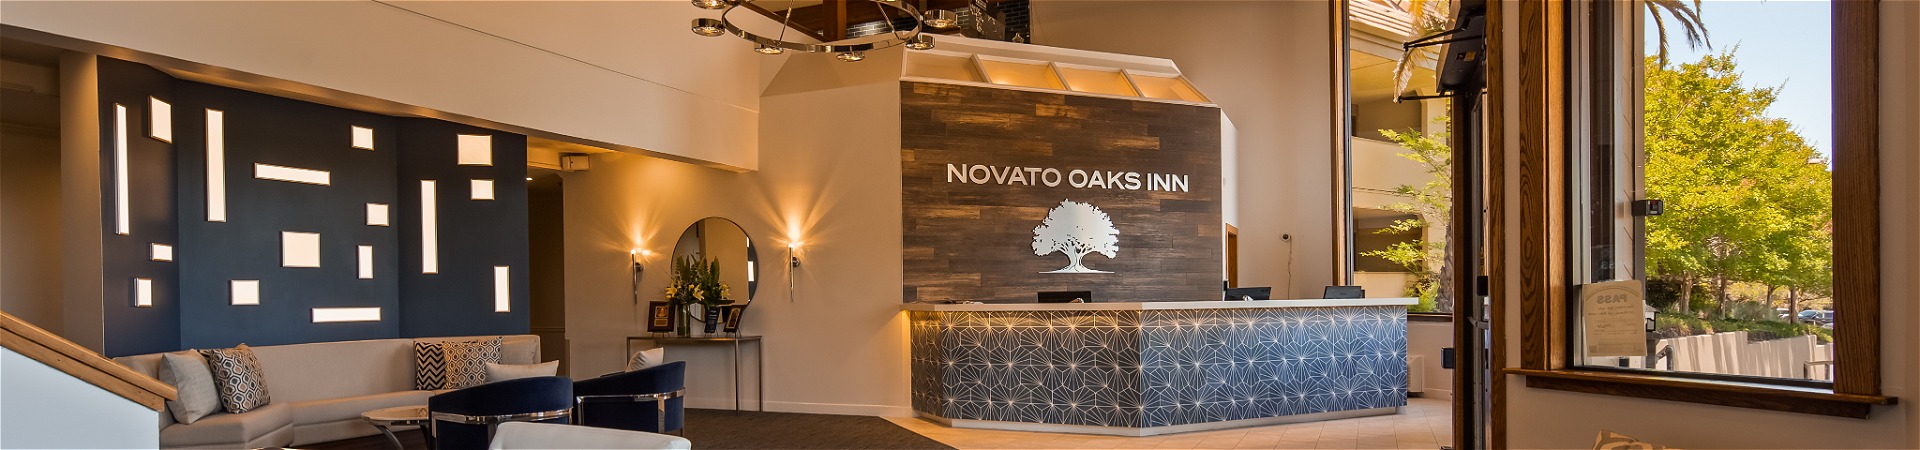 Novato Oaks Inn hotel lobby and front desk